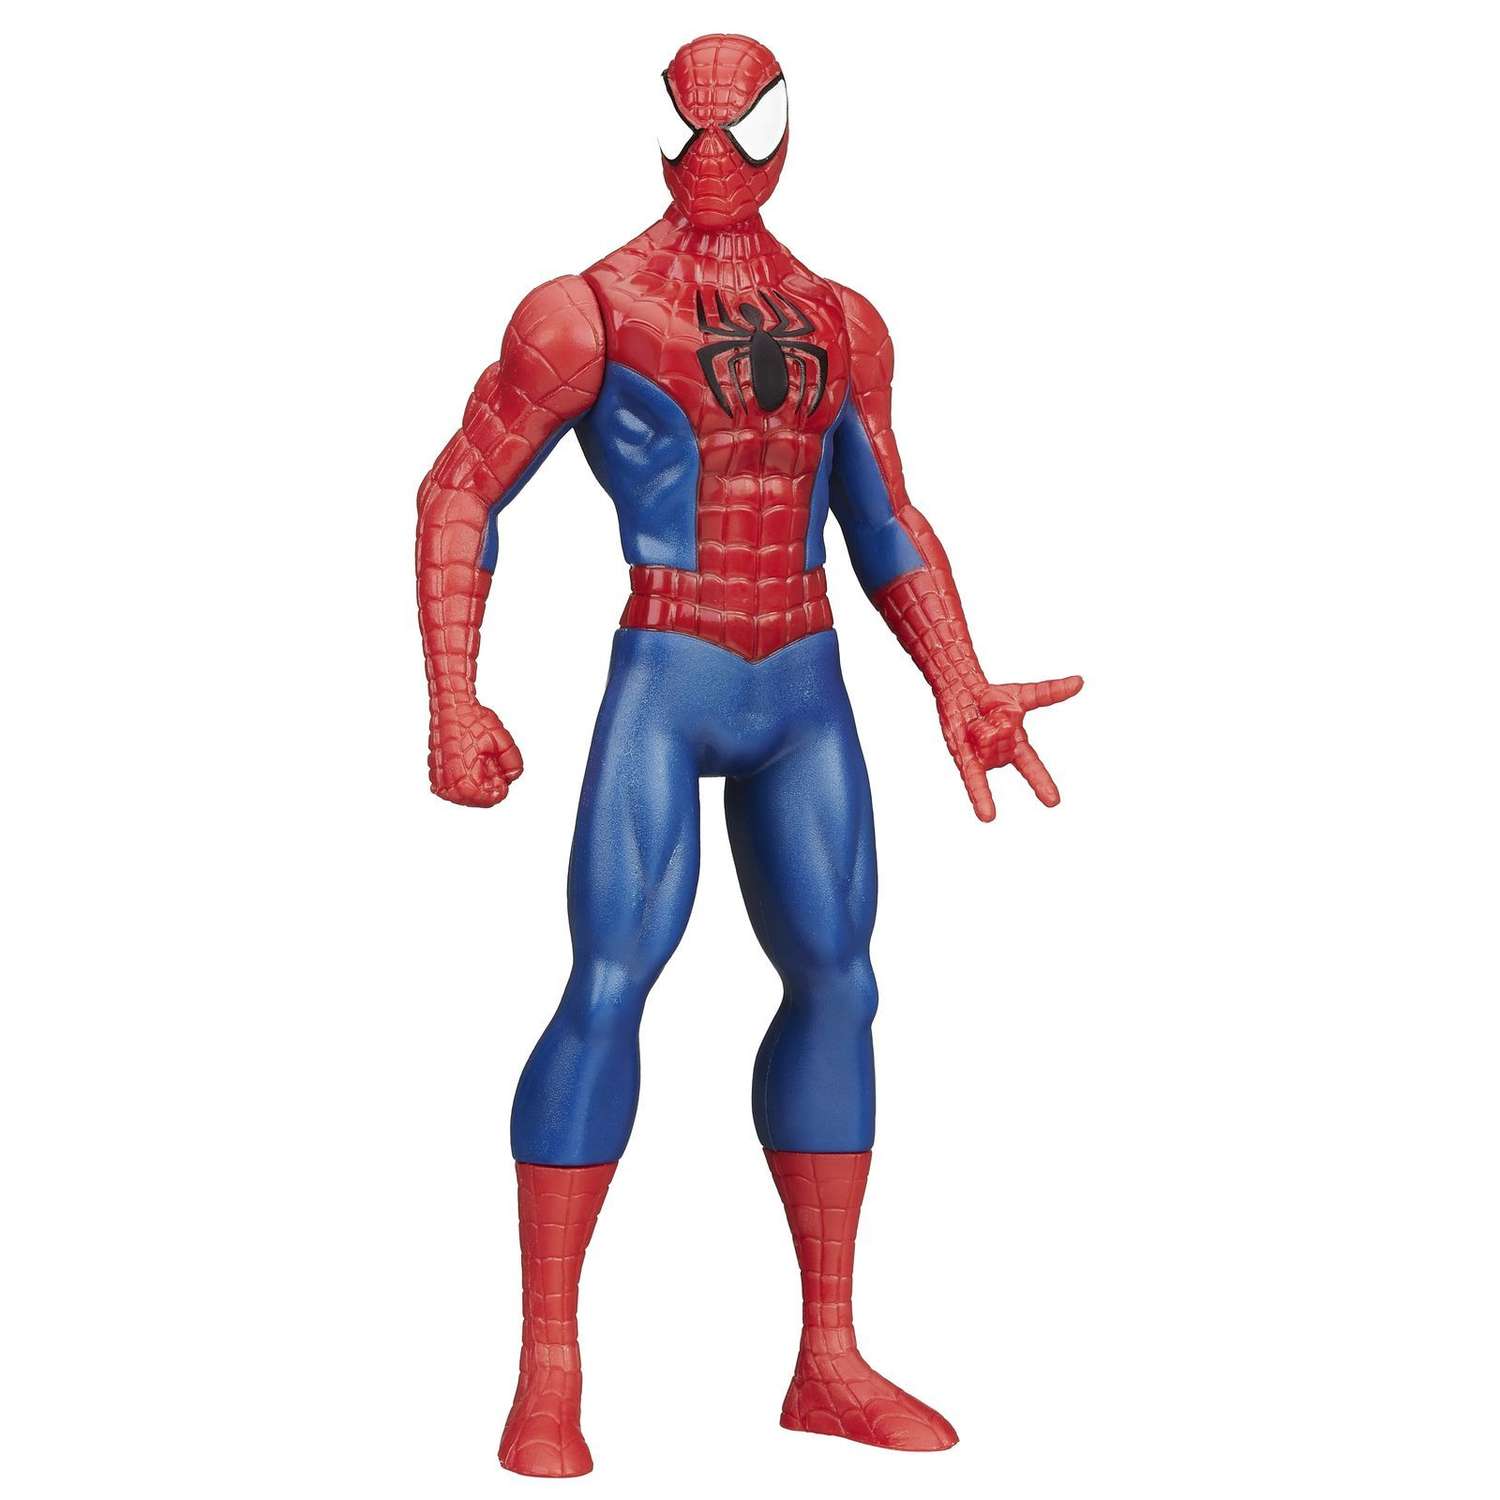 Фигурка Человек-Паук (Spider-man) (Marvel) Человек-Паук B1816EU4 - фото 1